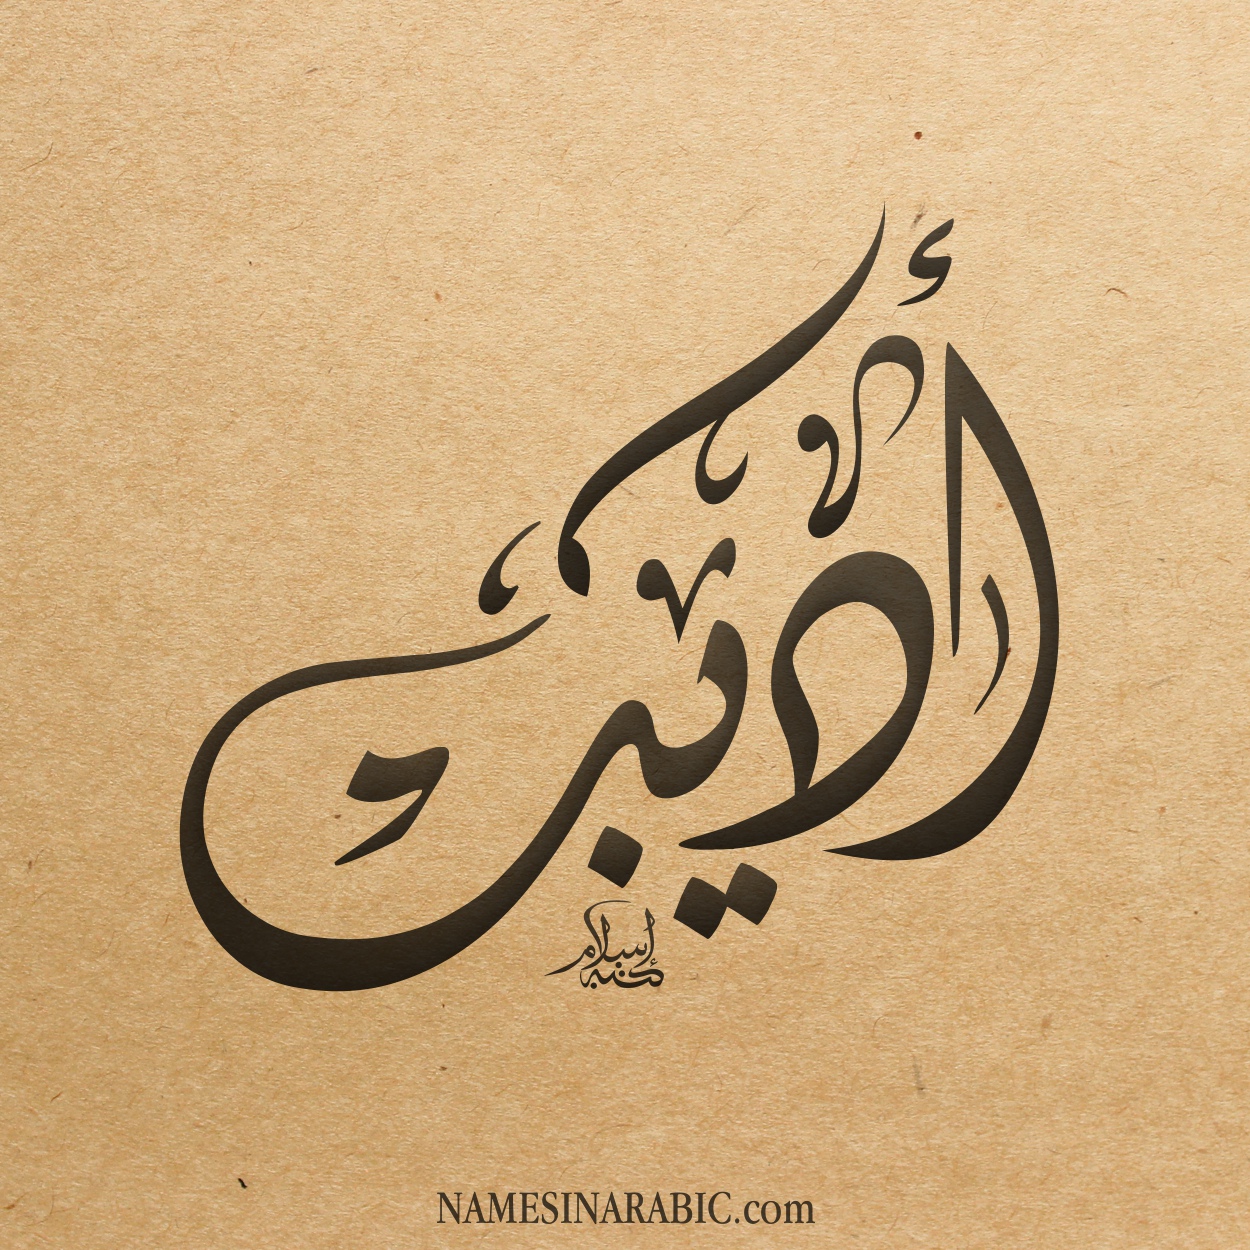 Adeeb-Name-in-Arabic-Diwani-Calligraphy.jpg